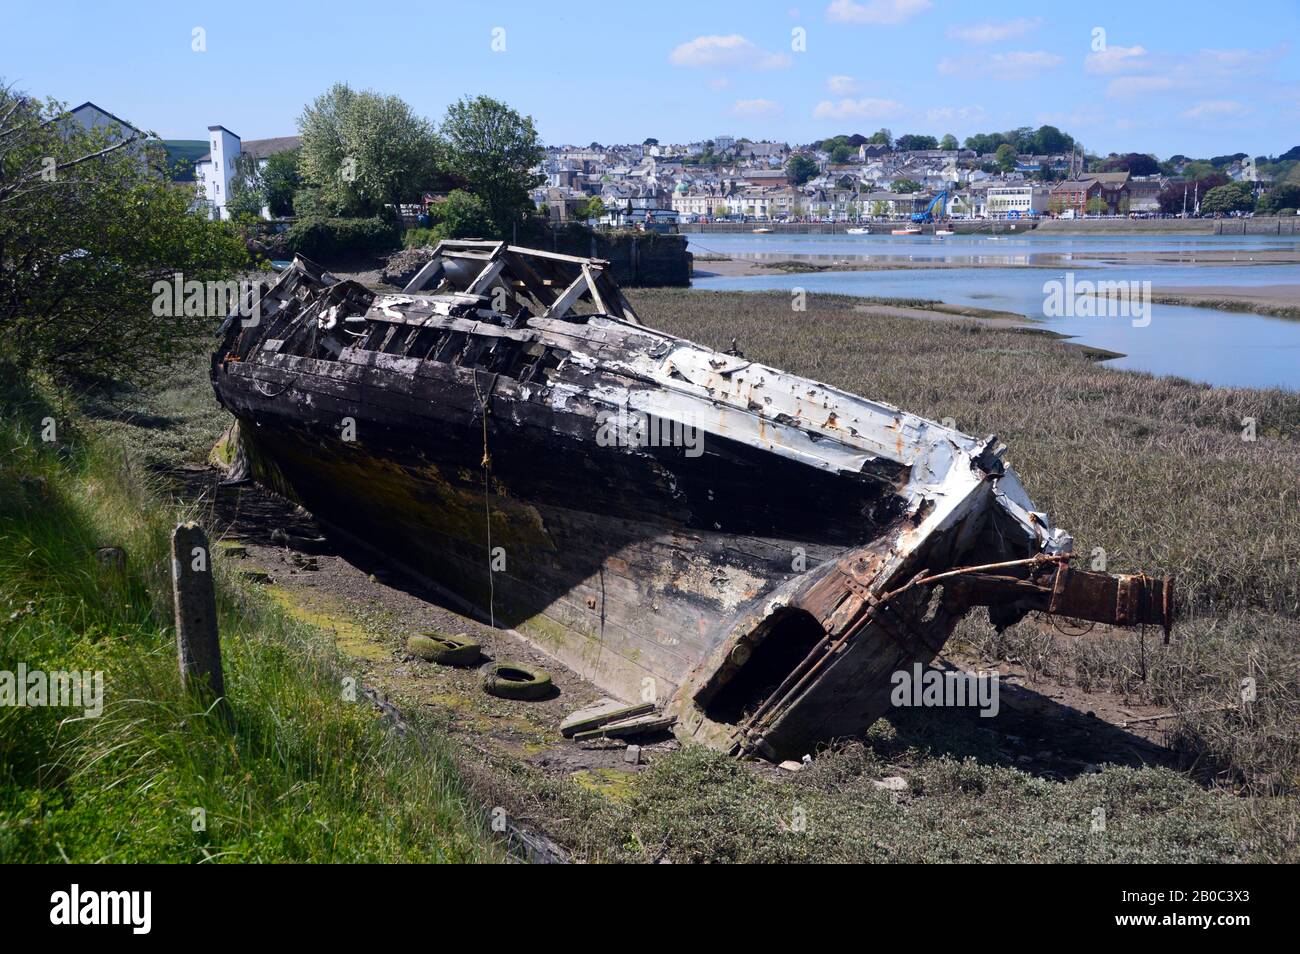 Vieille Hull d'un bateau en bois Wreck dans le Mud sur l'estuaire de la rivière Torridge près de Bideford sur la piste Tarka/South West Coast Path, North Devon. ROYAUME-UNI. Banque D'Images